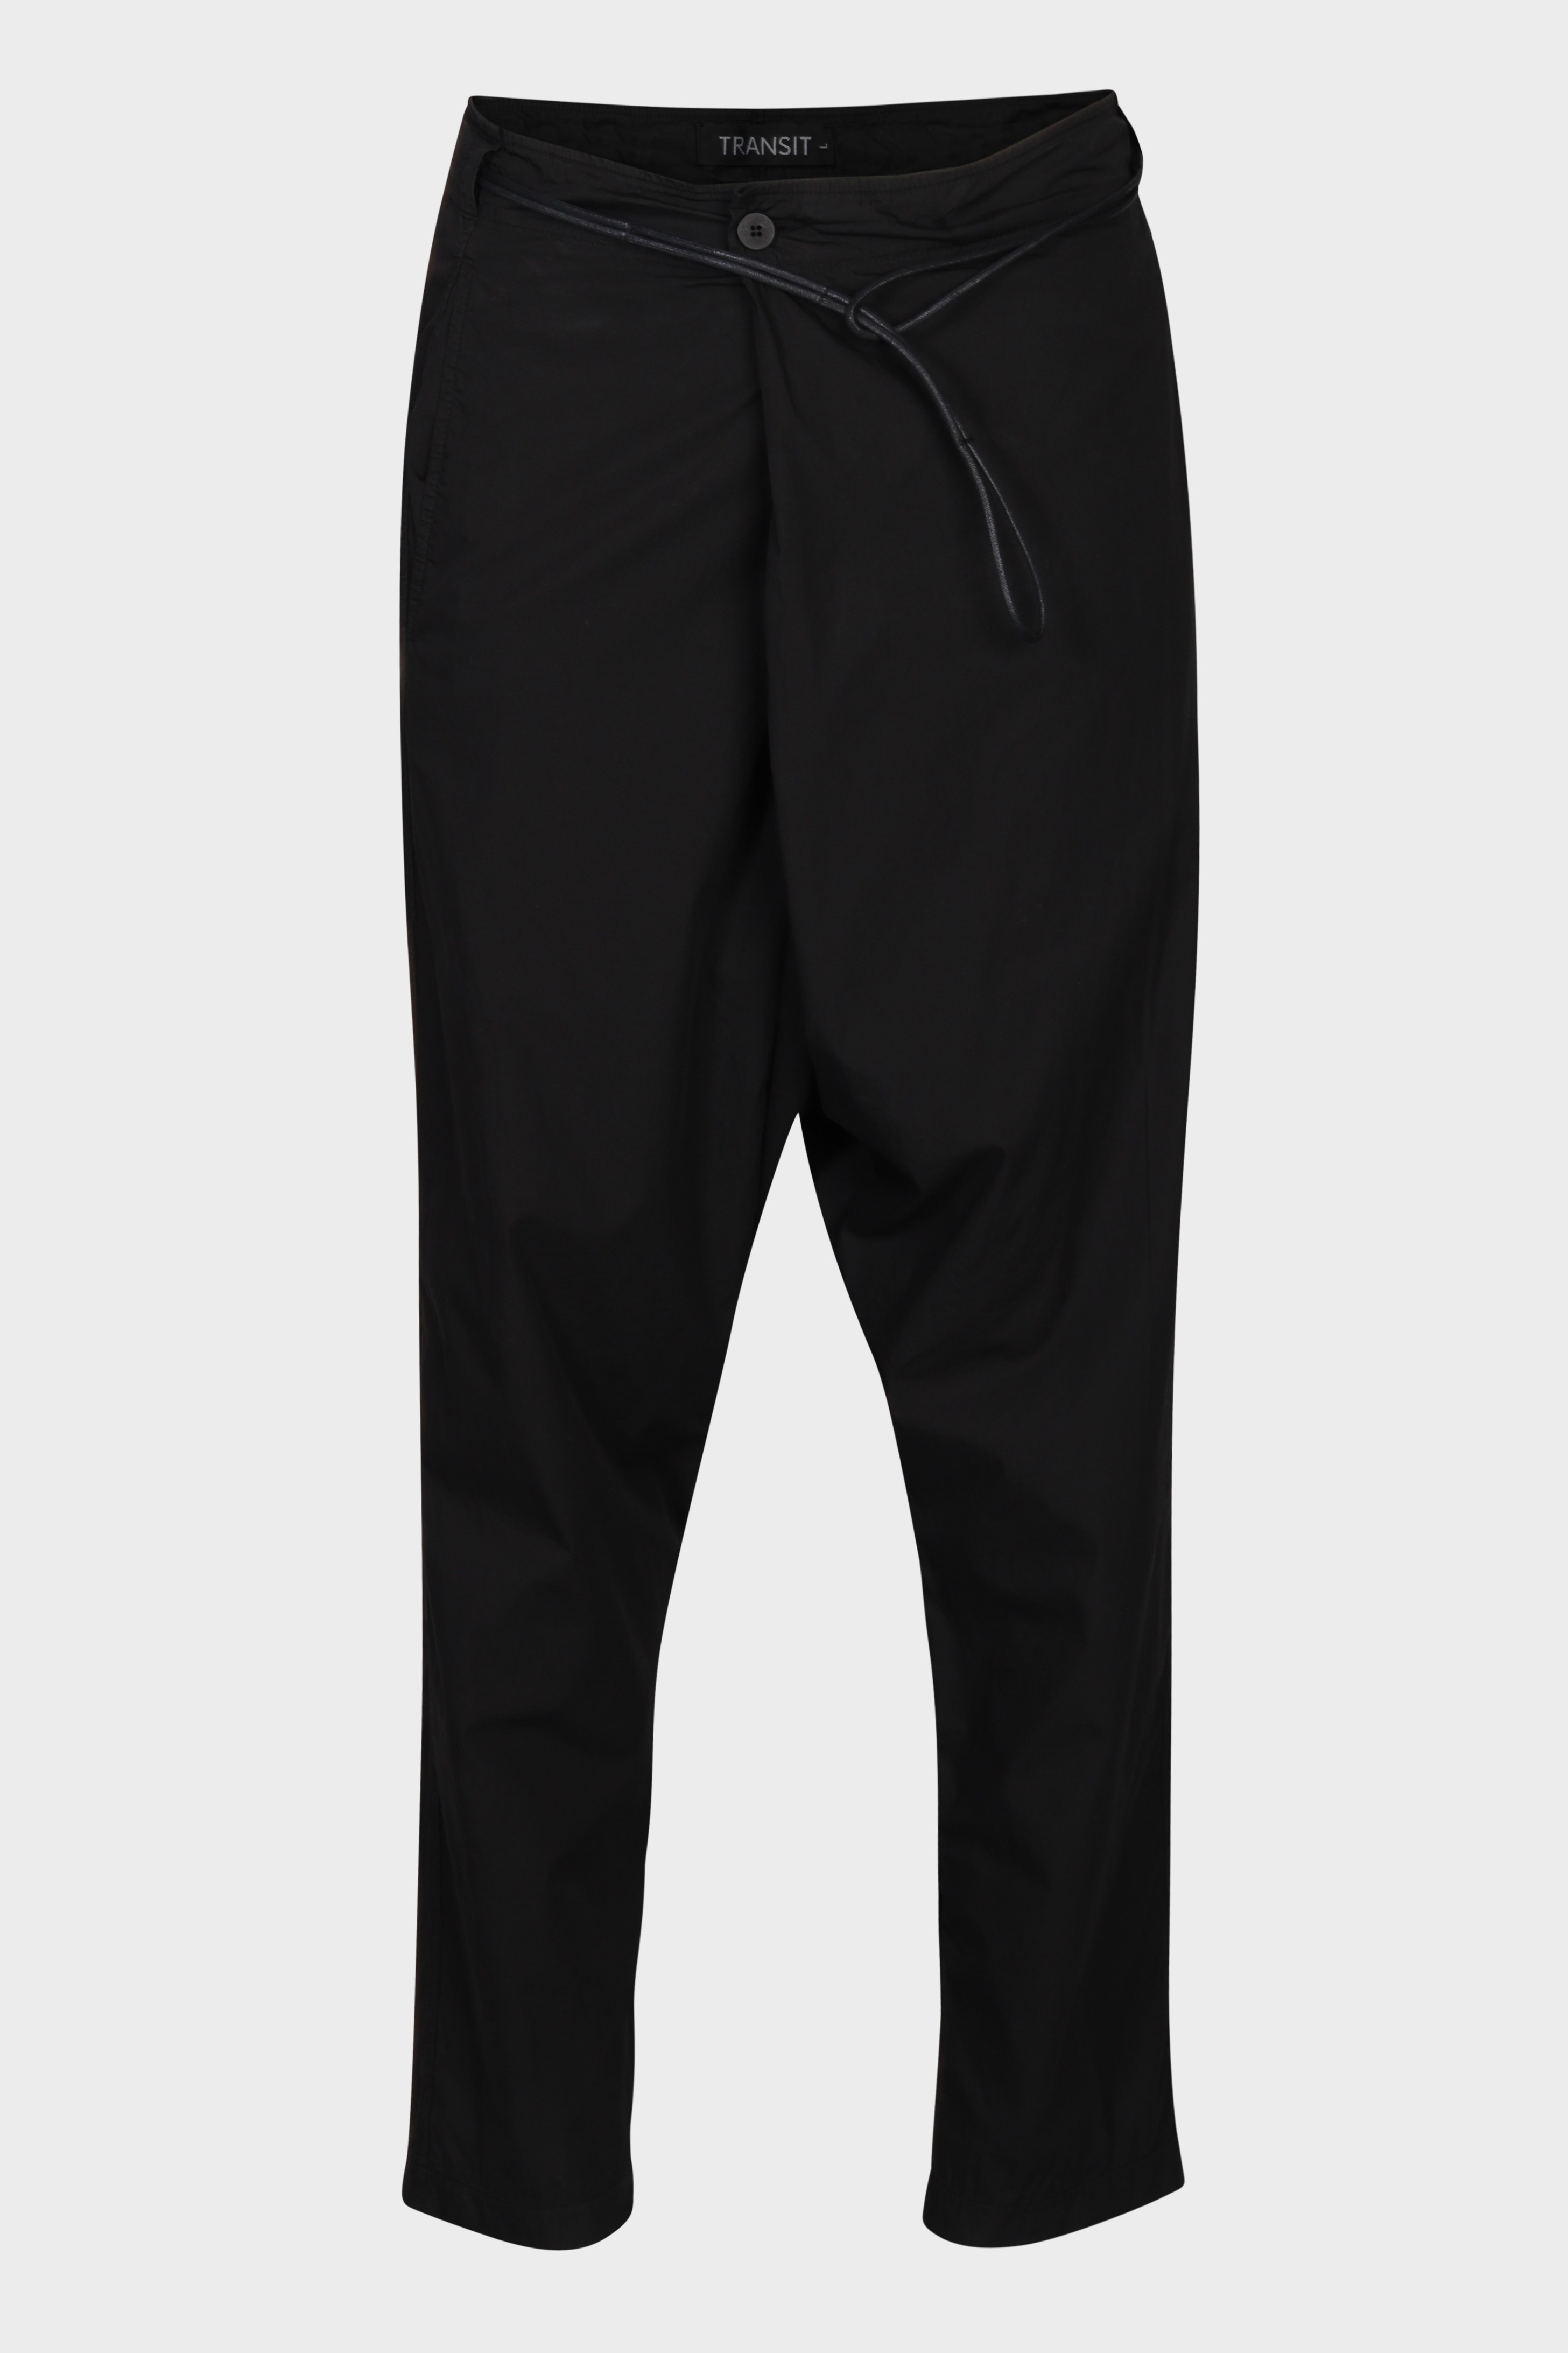 TRANSIT UOMO Light Cotton Pant in Black